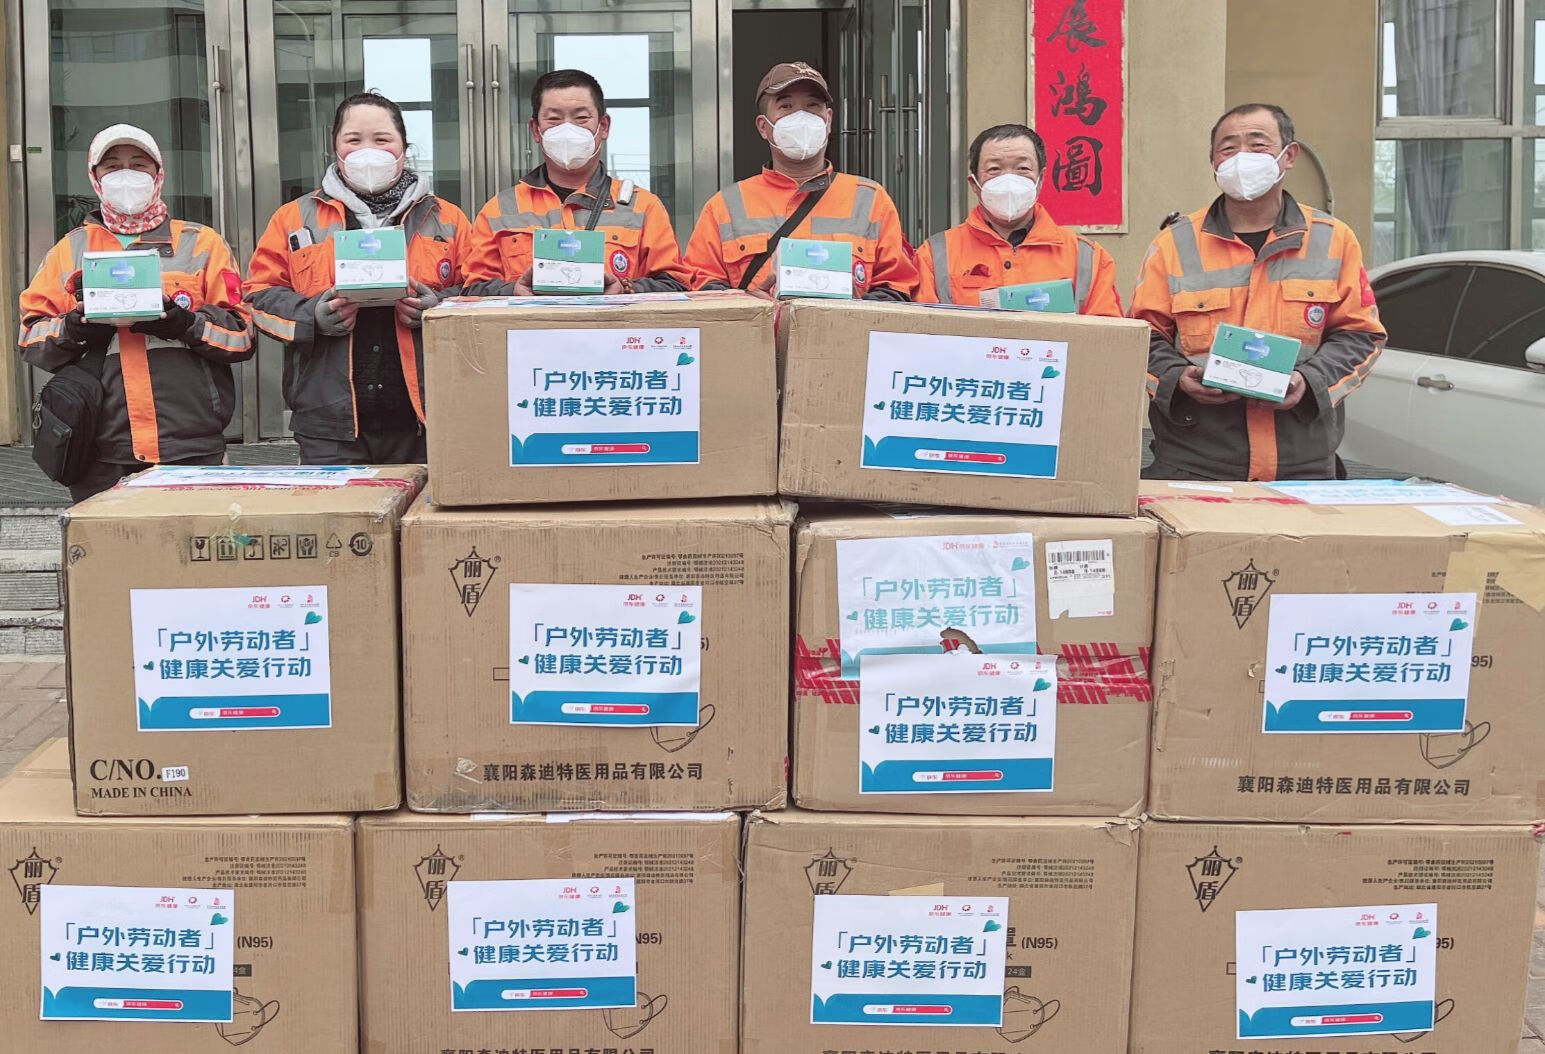 聚焦户外劳动者健康保障  京东健康联合多方捐赠物资与医疗服务近500万元